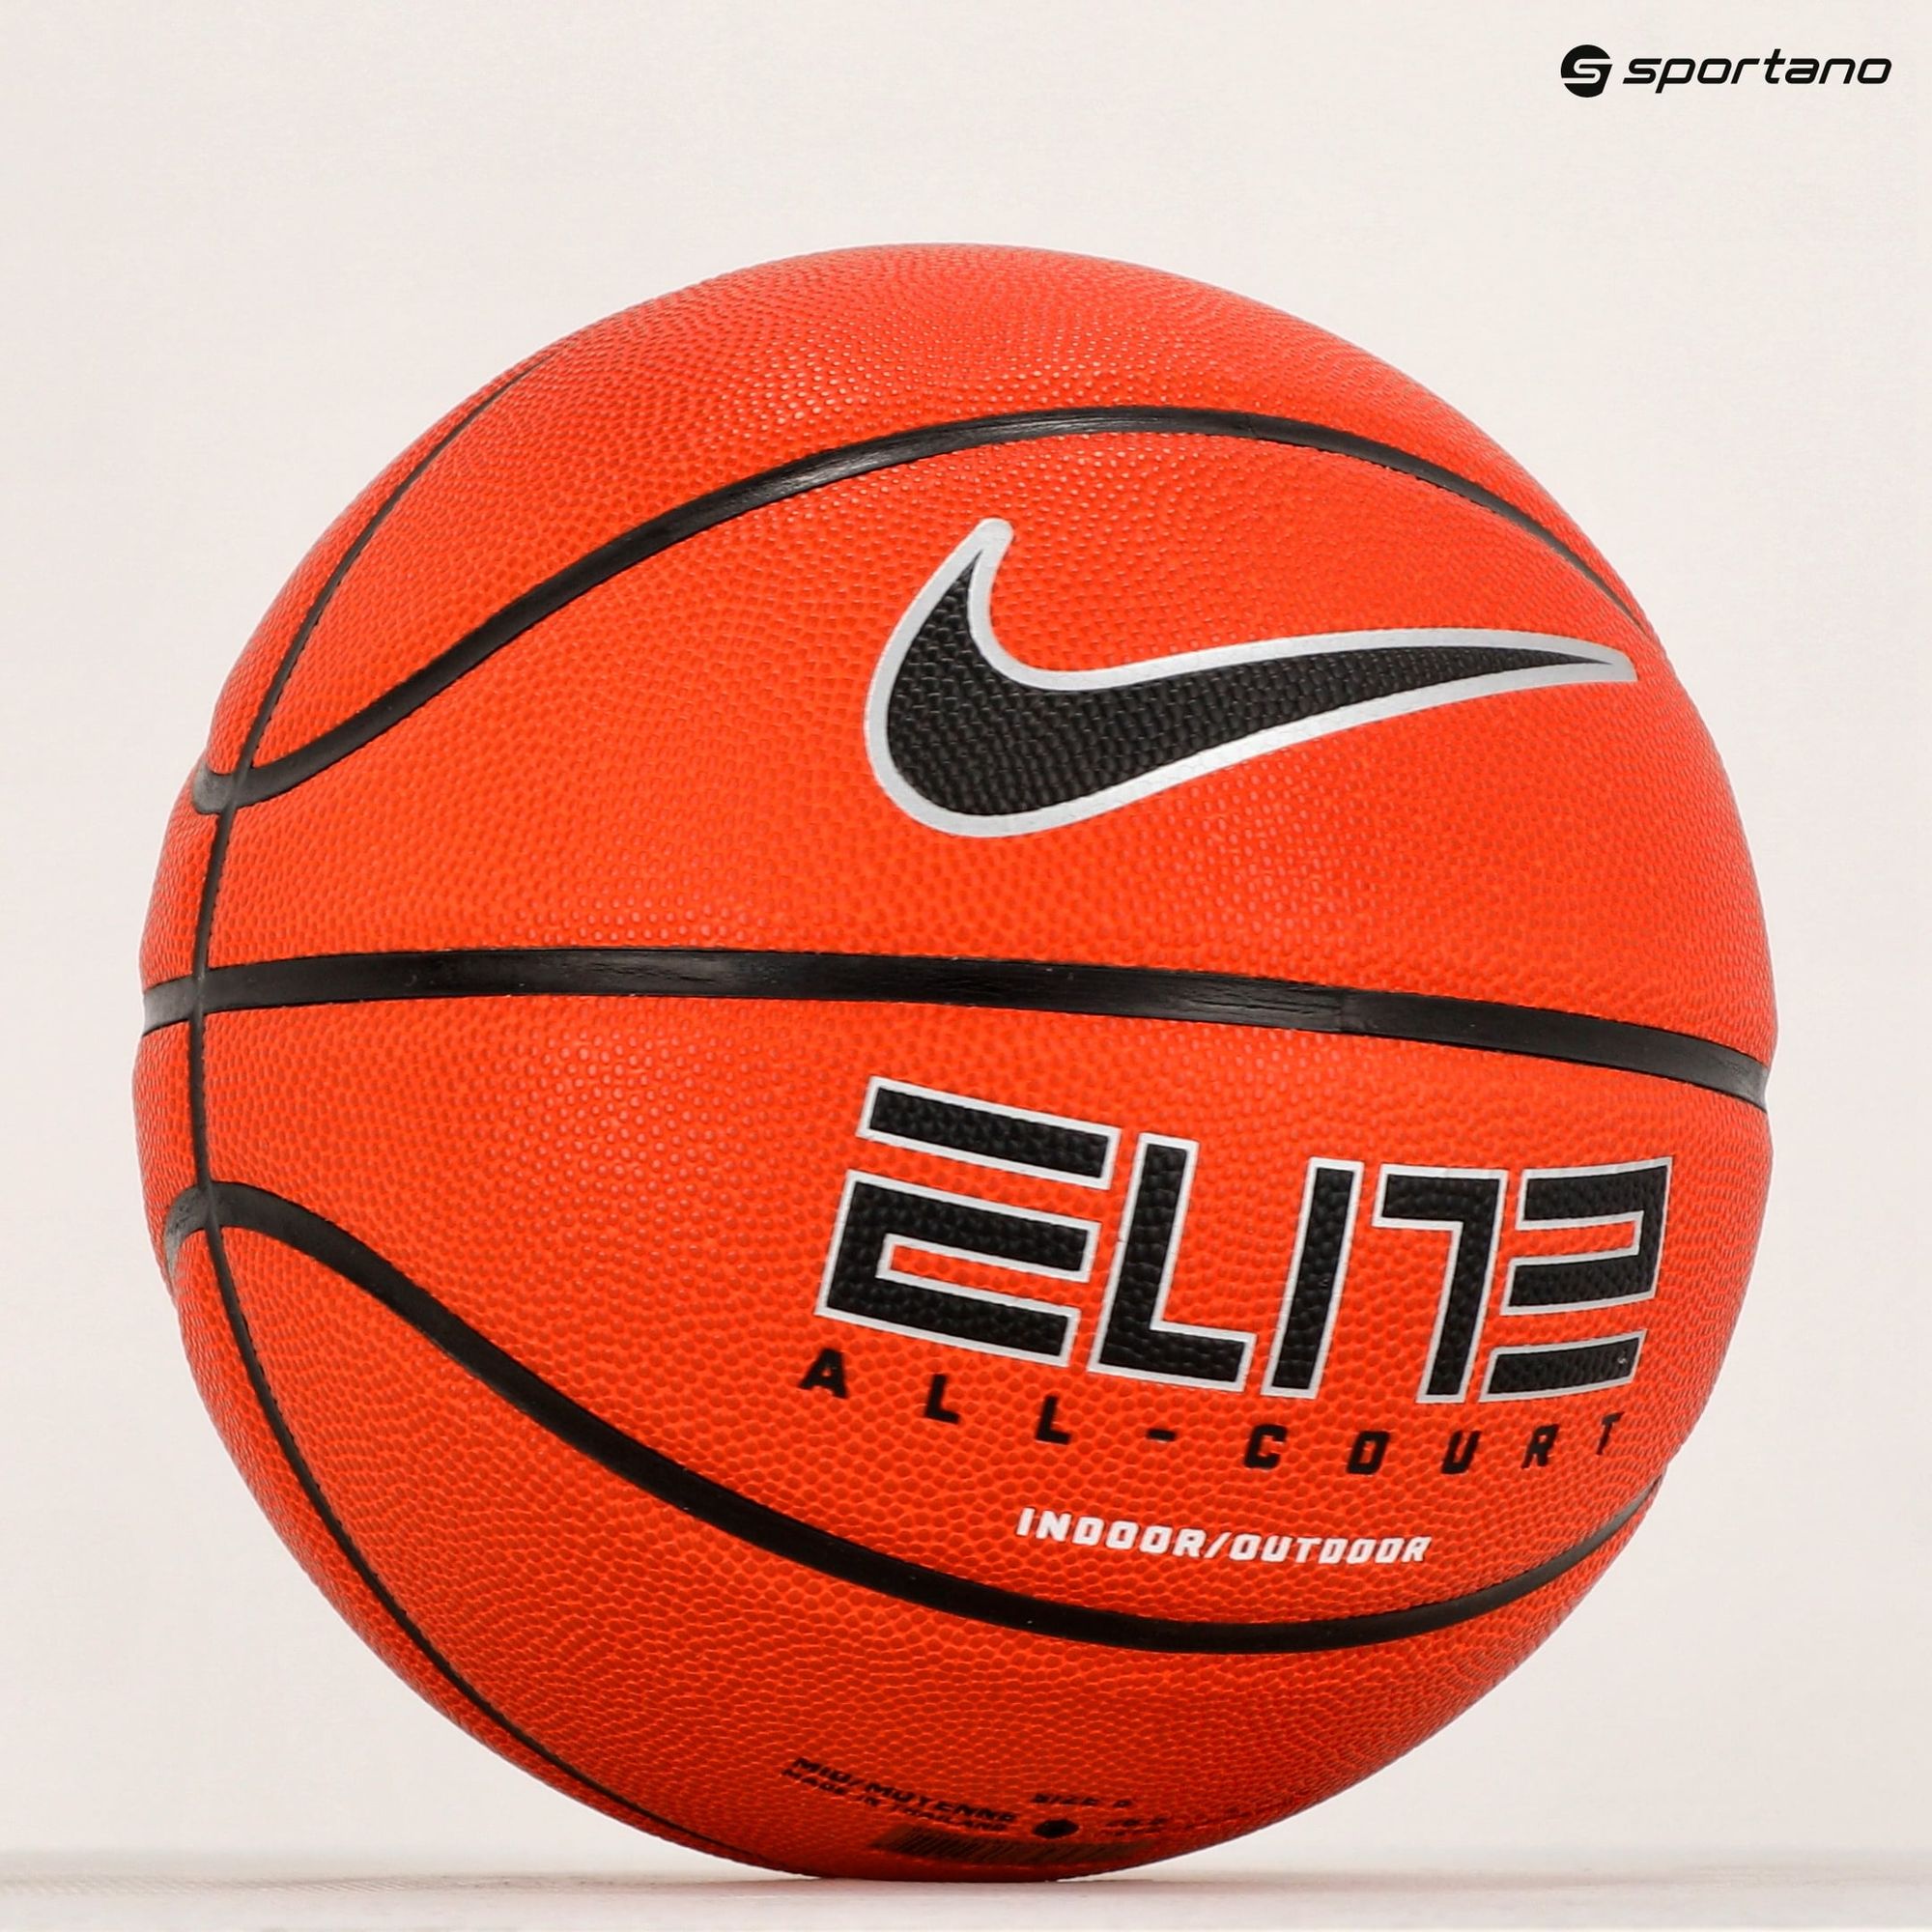 Piłka do koszykówki Nike Elite All Court 8P 2.0 Deflated amber/black/metallic silver rozmiar 6 zdjęcie nr 4